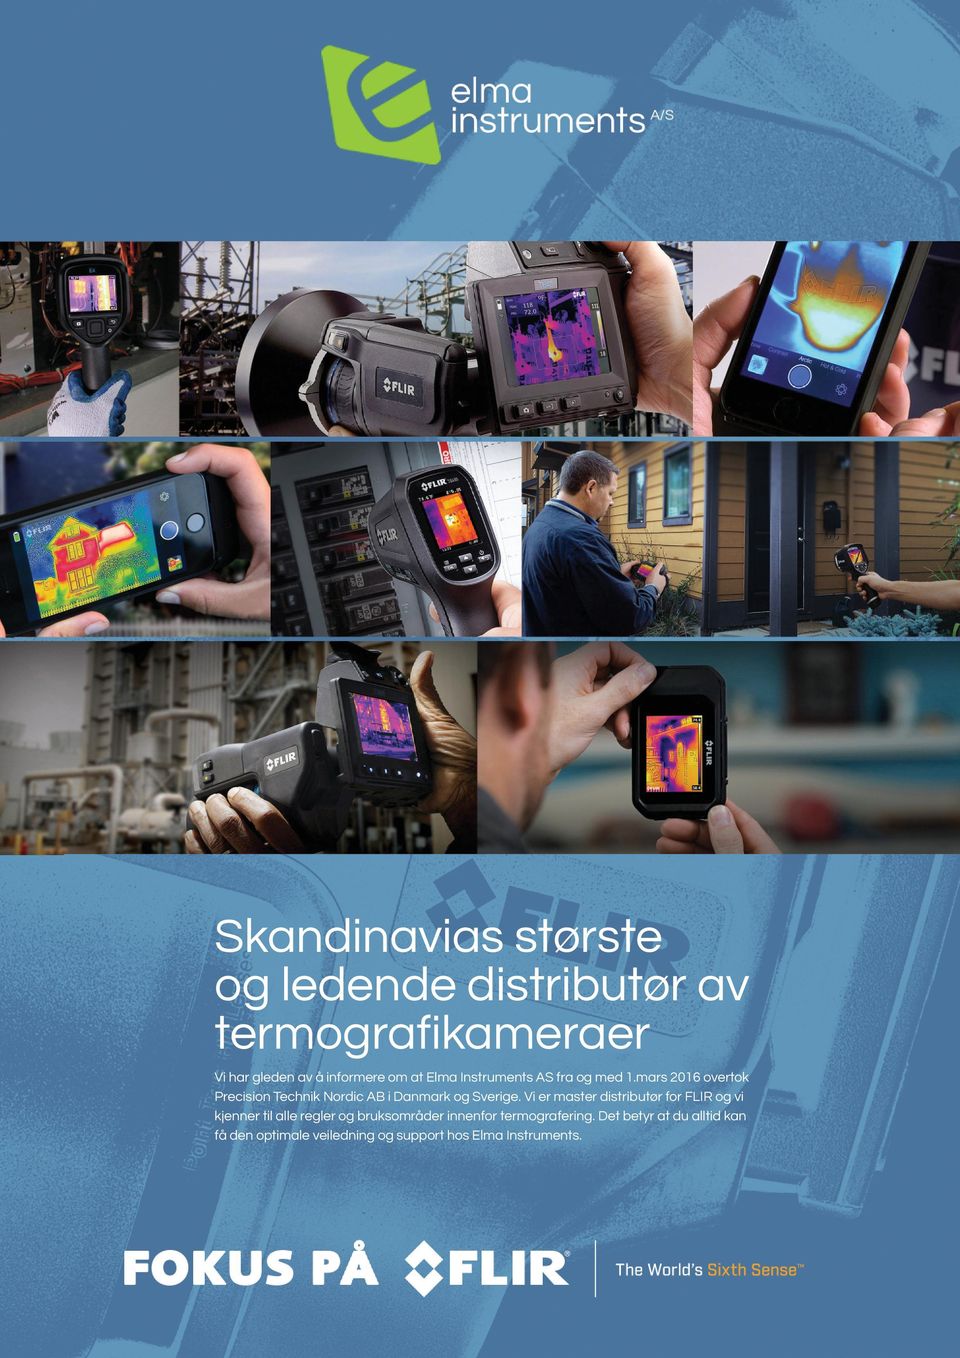 mars 2016 overtok Precision Technik Nordic AB i Danmark og Sverige.